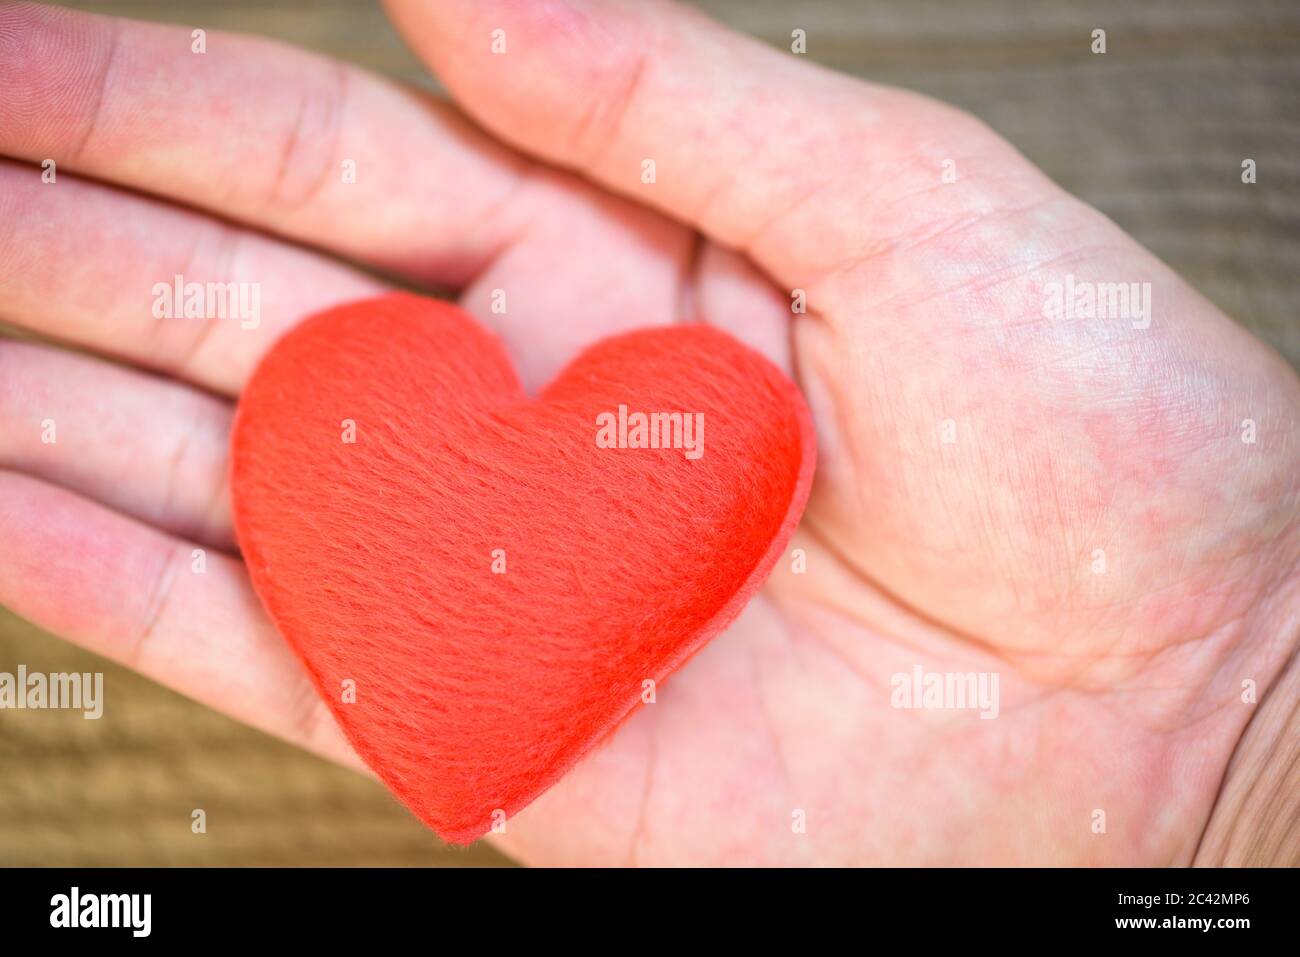 soins de santé amour don d'organe assurance famille journée mondiale de la santé espoir / mains tenir coeur donner amour philanthropie donner aide à la chaleur prendre soin valen Banque D'Images